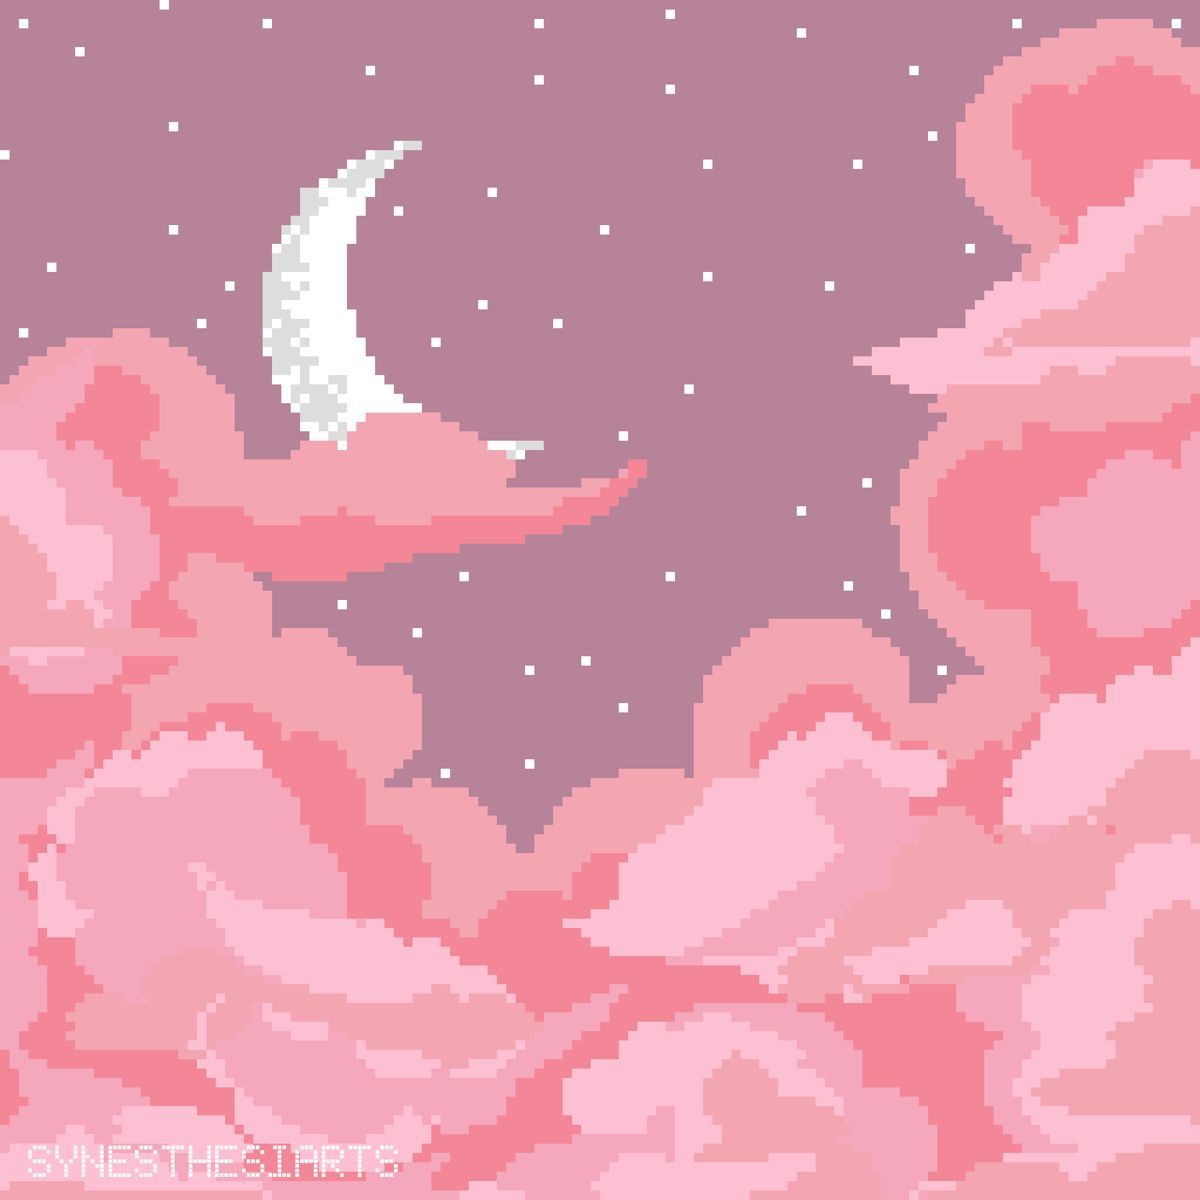 Pink Pixel Art Wallpapers - Top Free Pink Pixel Art Backgrounds ...